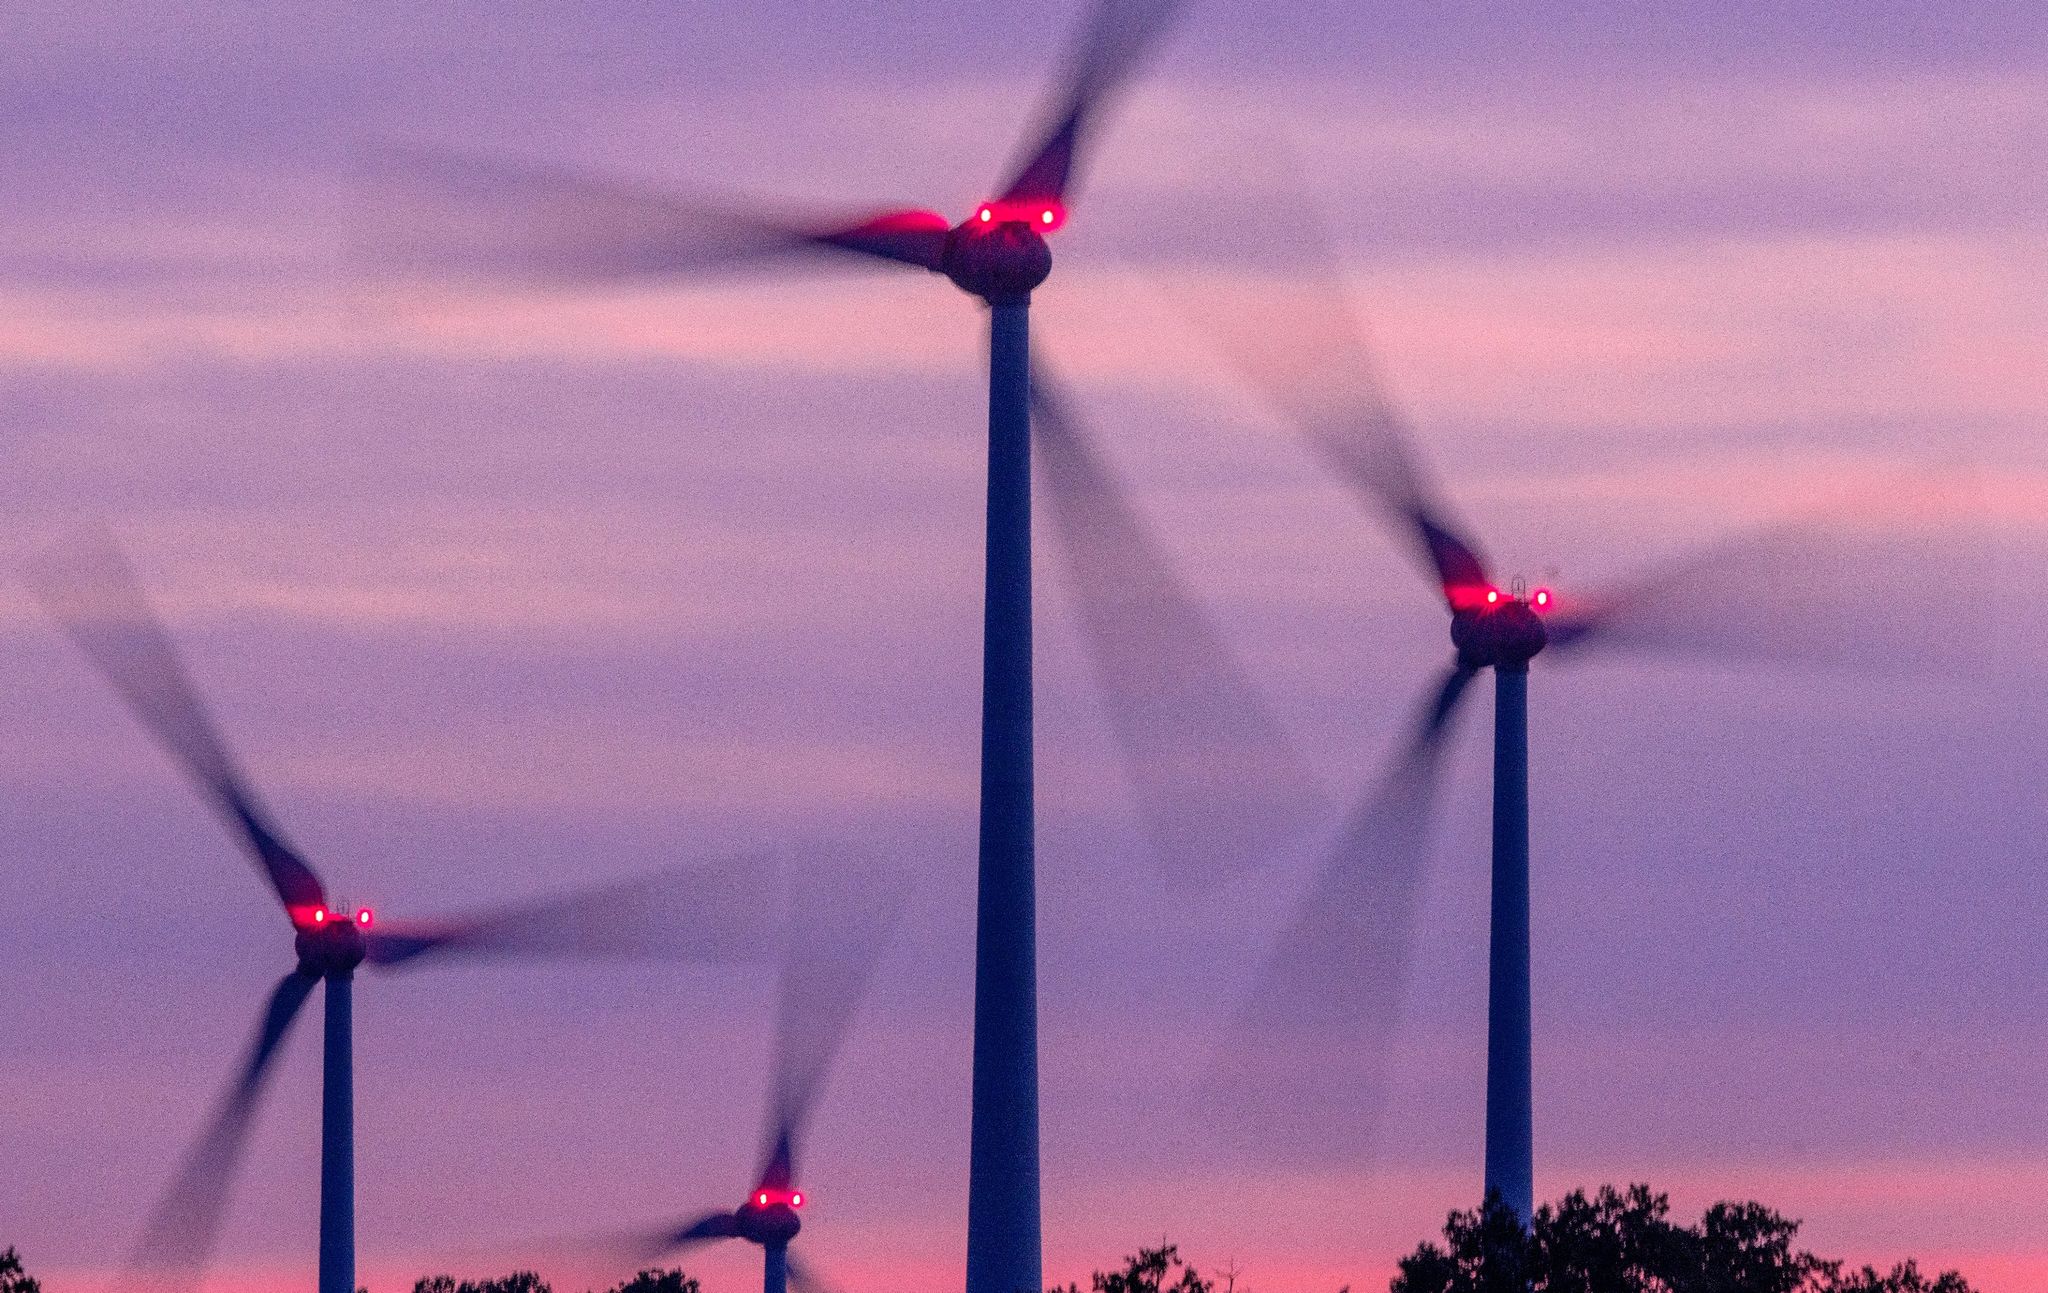 Niedersachsens Landesregierung hat einen Entwurf für einen beschleunigten Ausbau von erneuerbarer Energie beschlossen.